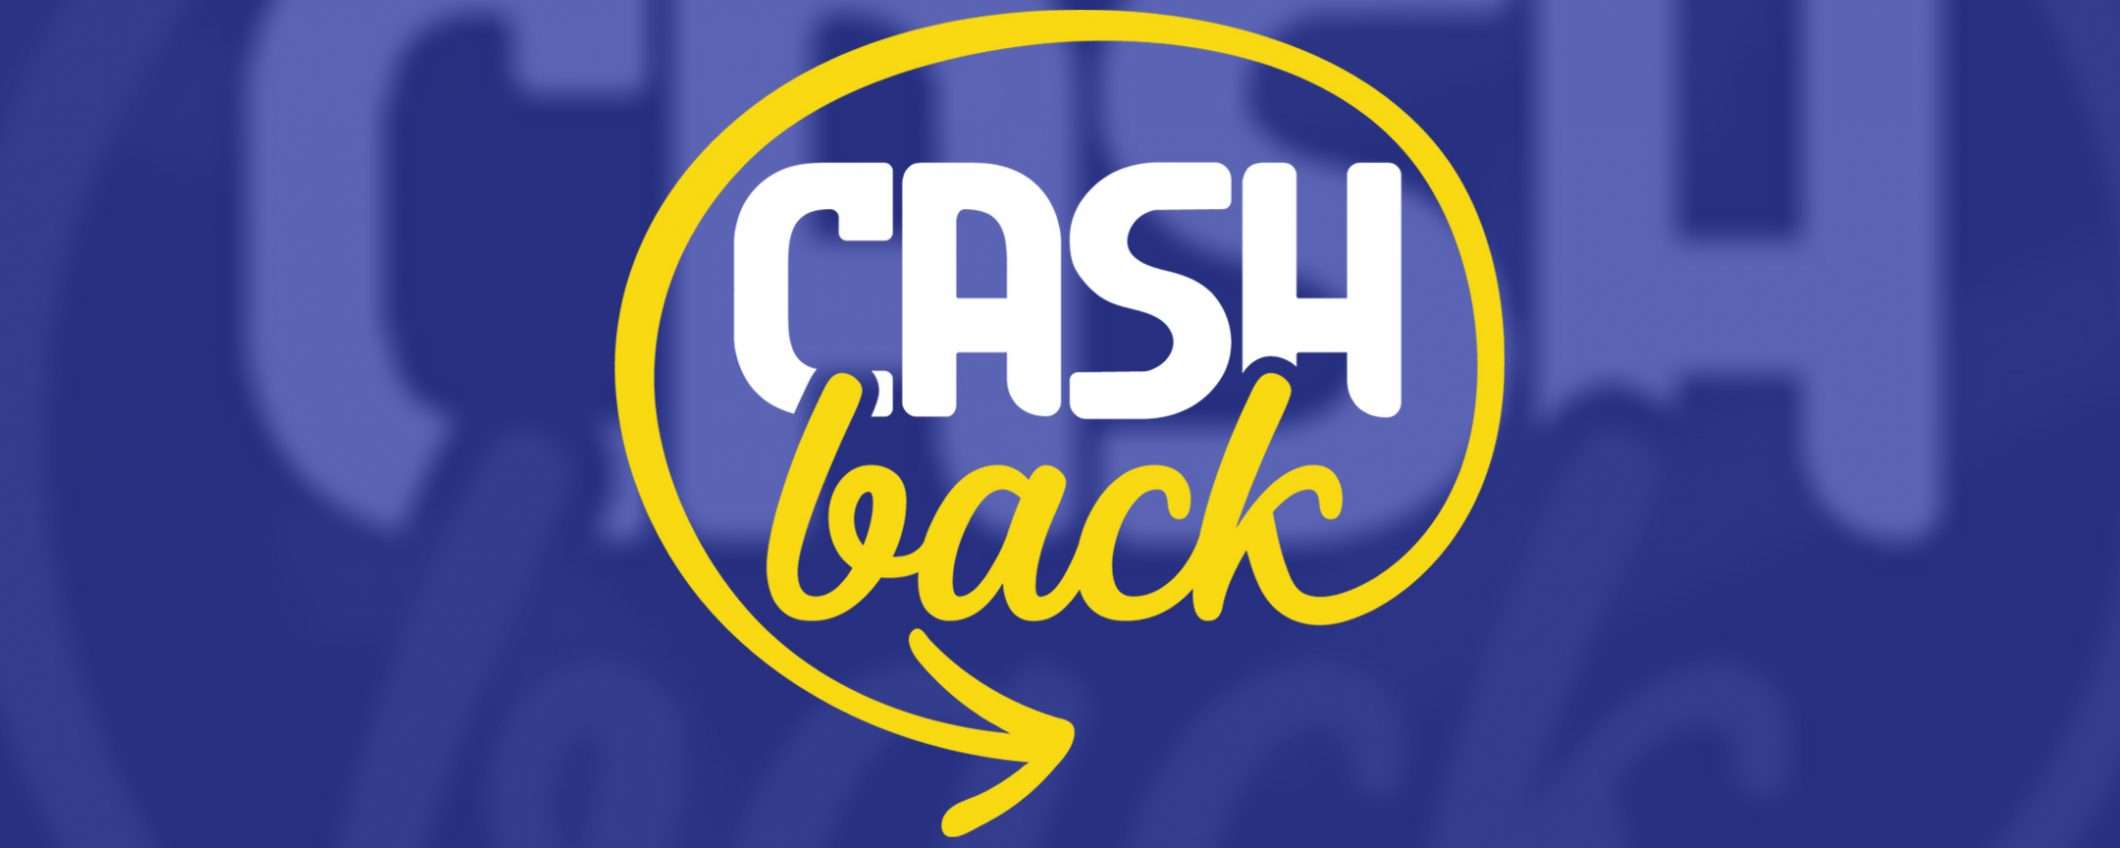 Addio Cashback: sacrificato sull'altare del bilancio